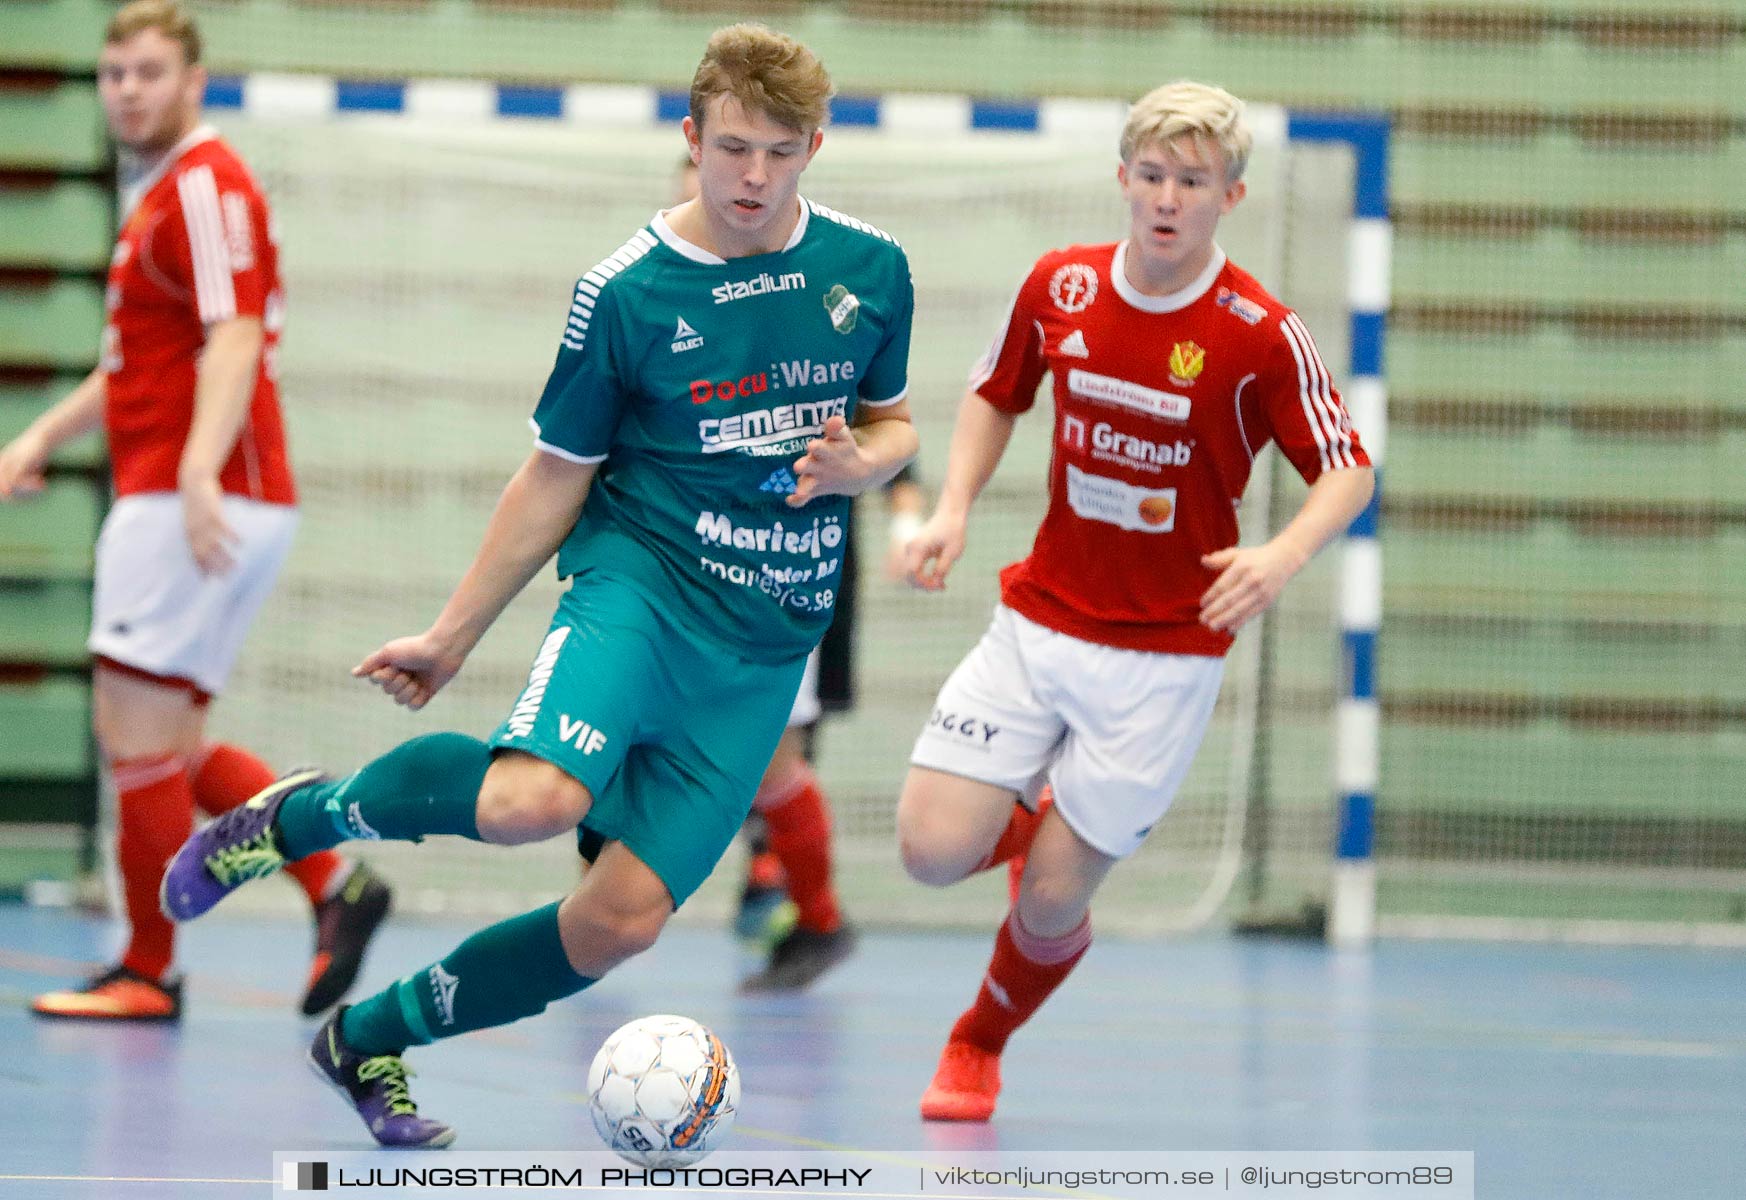 Skövde Futsalcup 2019 Herrar Vårgårda IK-Våmbs IF,herr,Arena Skövde,Skövde,Sverige,Futsal,,2019,227252